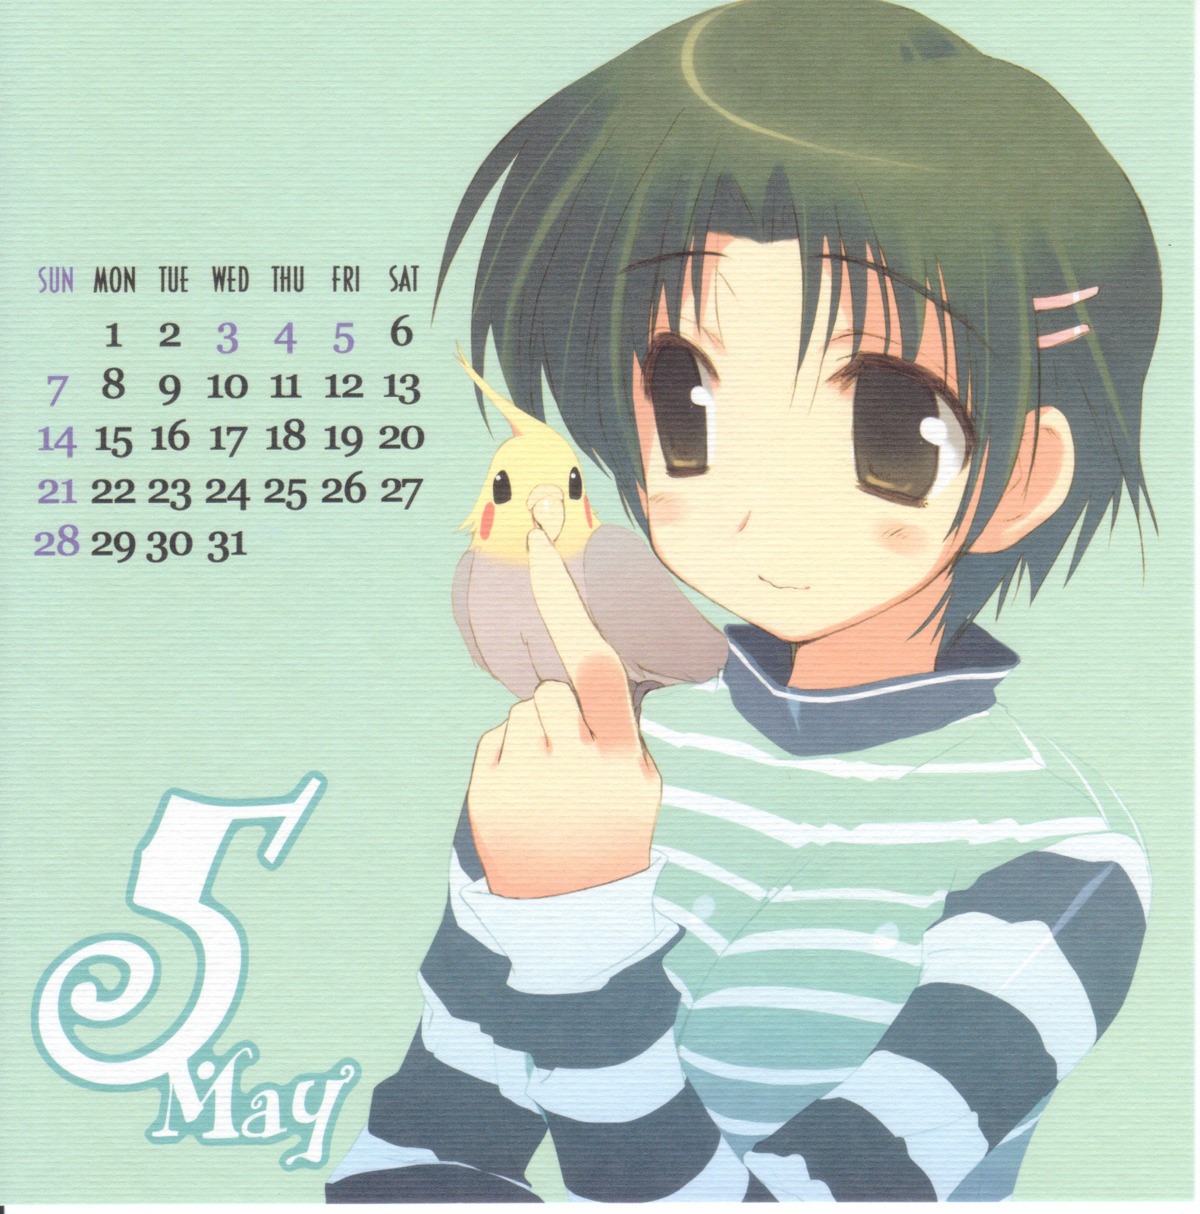 amaduyu_tatsuki blazer_one calendar